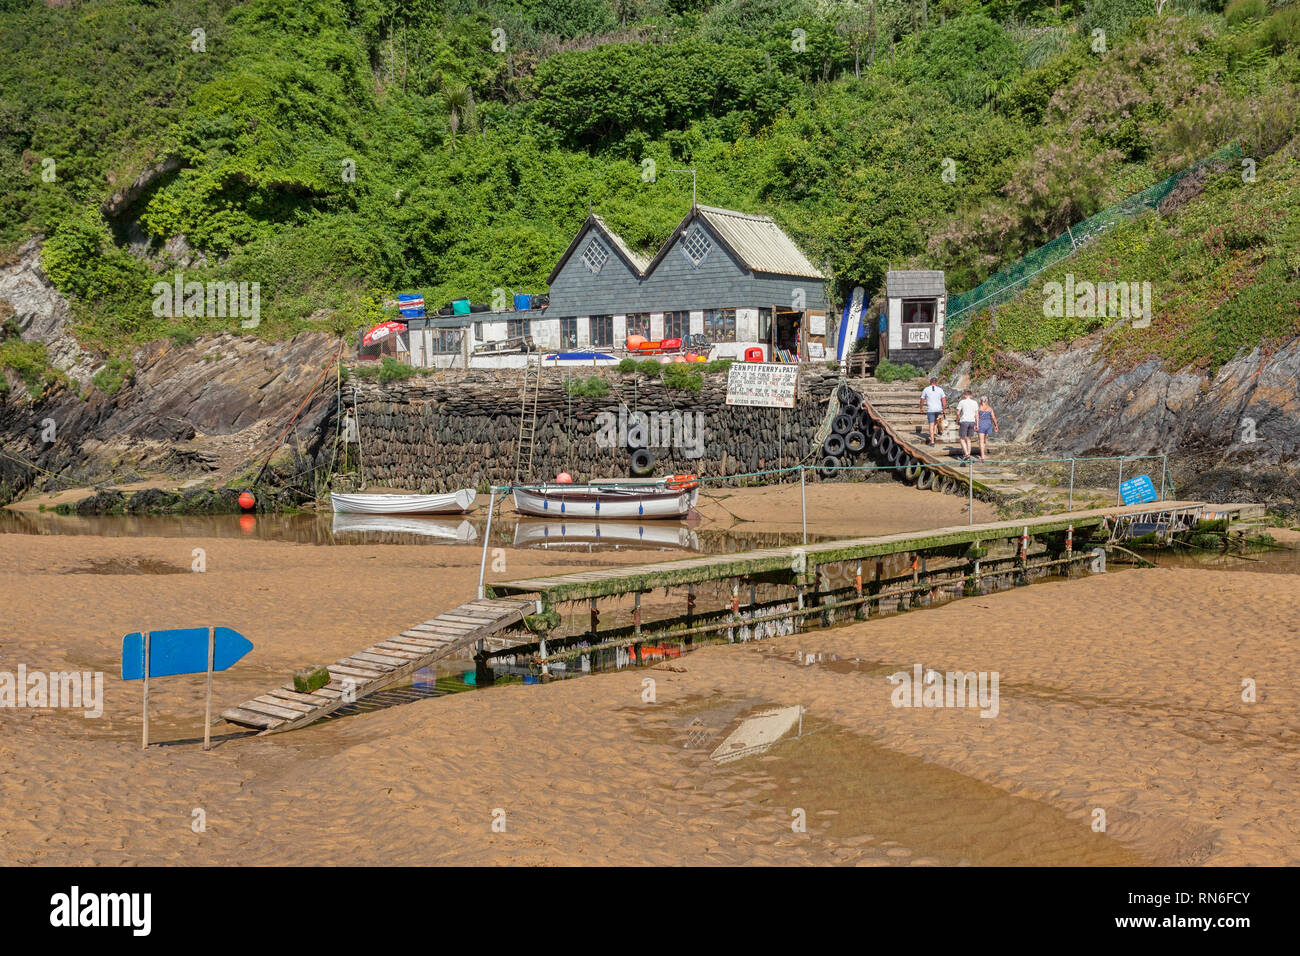 23 Juin 2018 : Newquay, Cornwall, UK Nord - plage de Crantock avec la Fosse de fougères et de Ferry. Banque D'Images